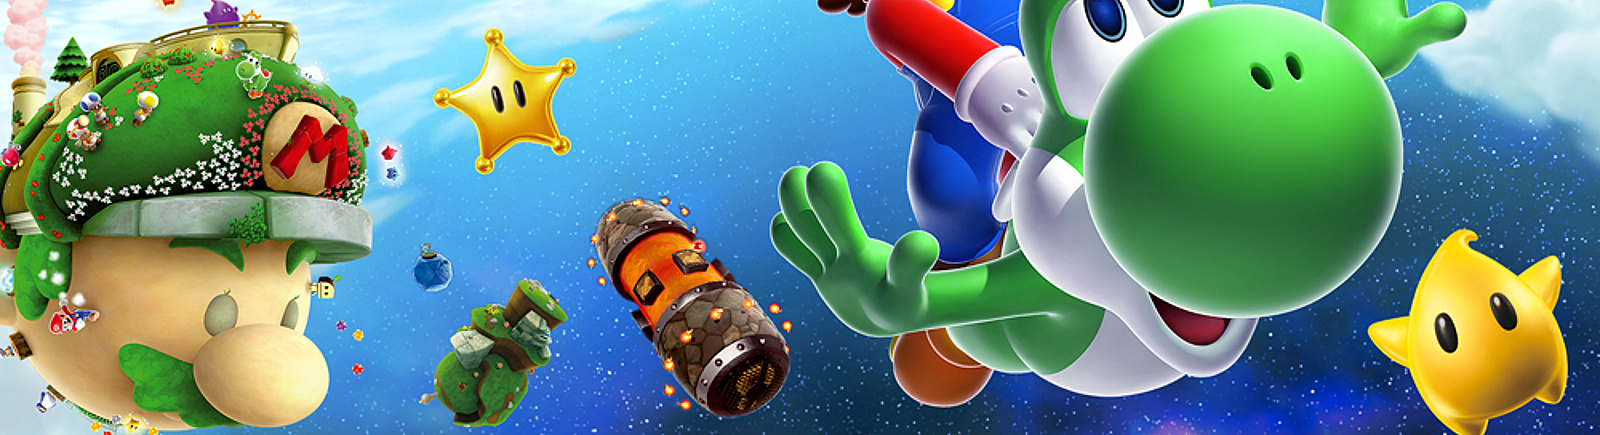 Дата выхода Super Mario Galaxy (SMG)  на Wii в России и во всем мире